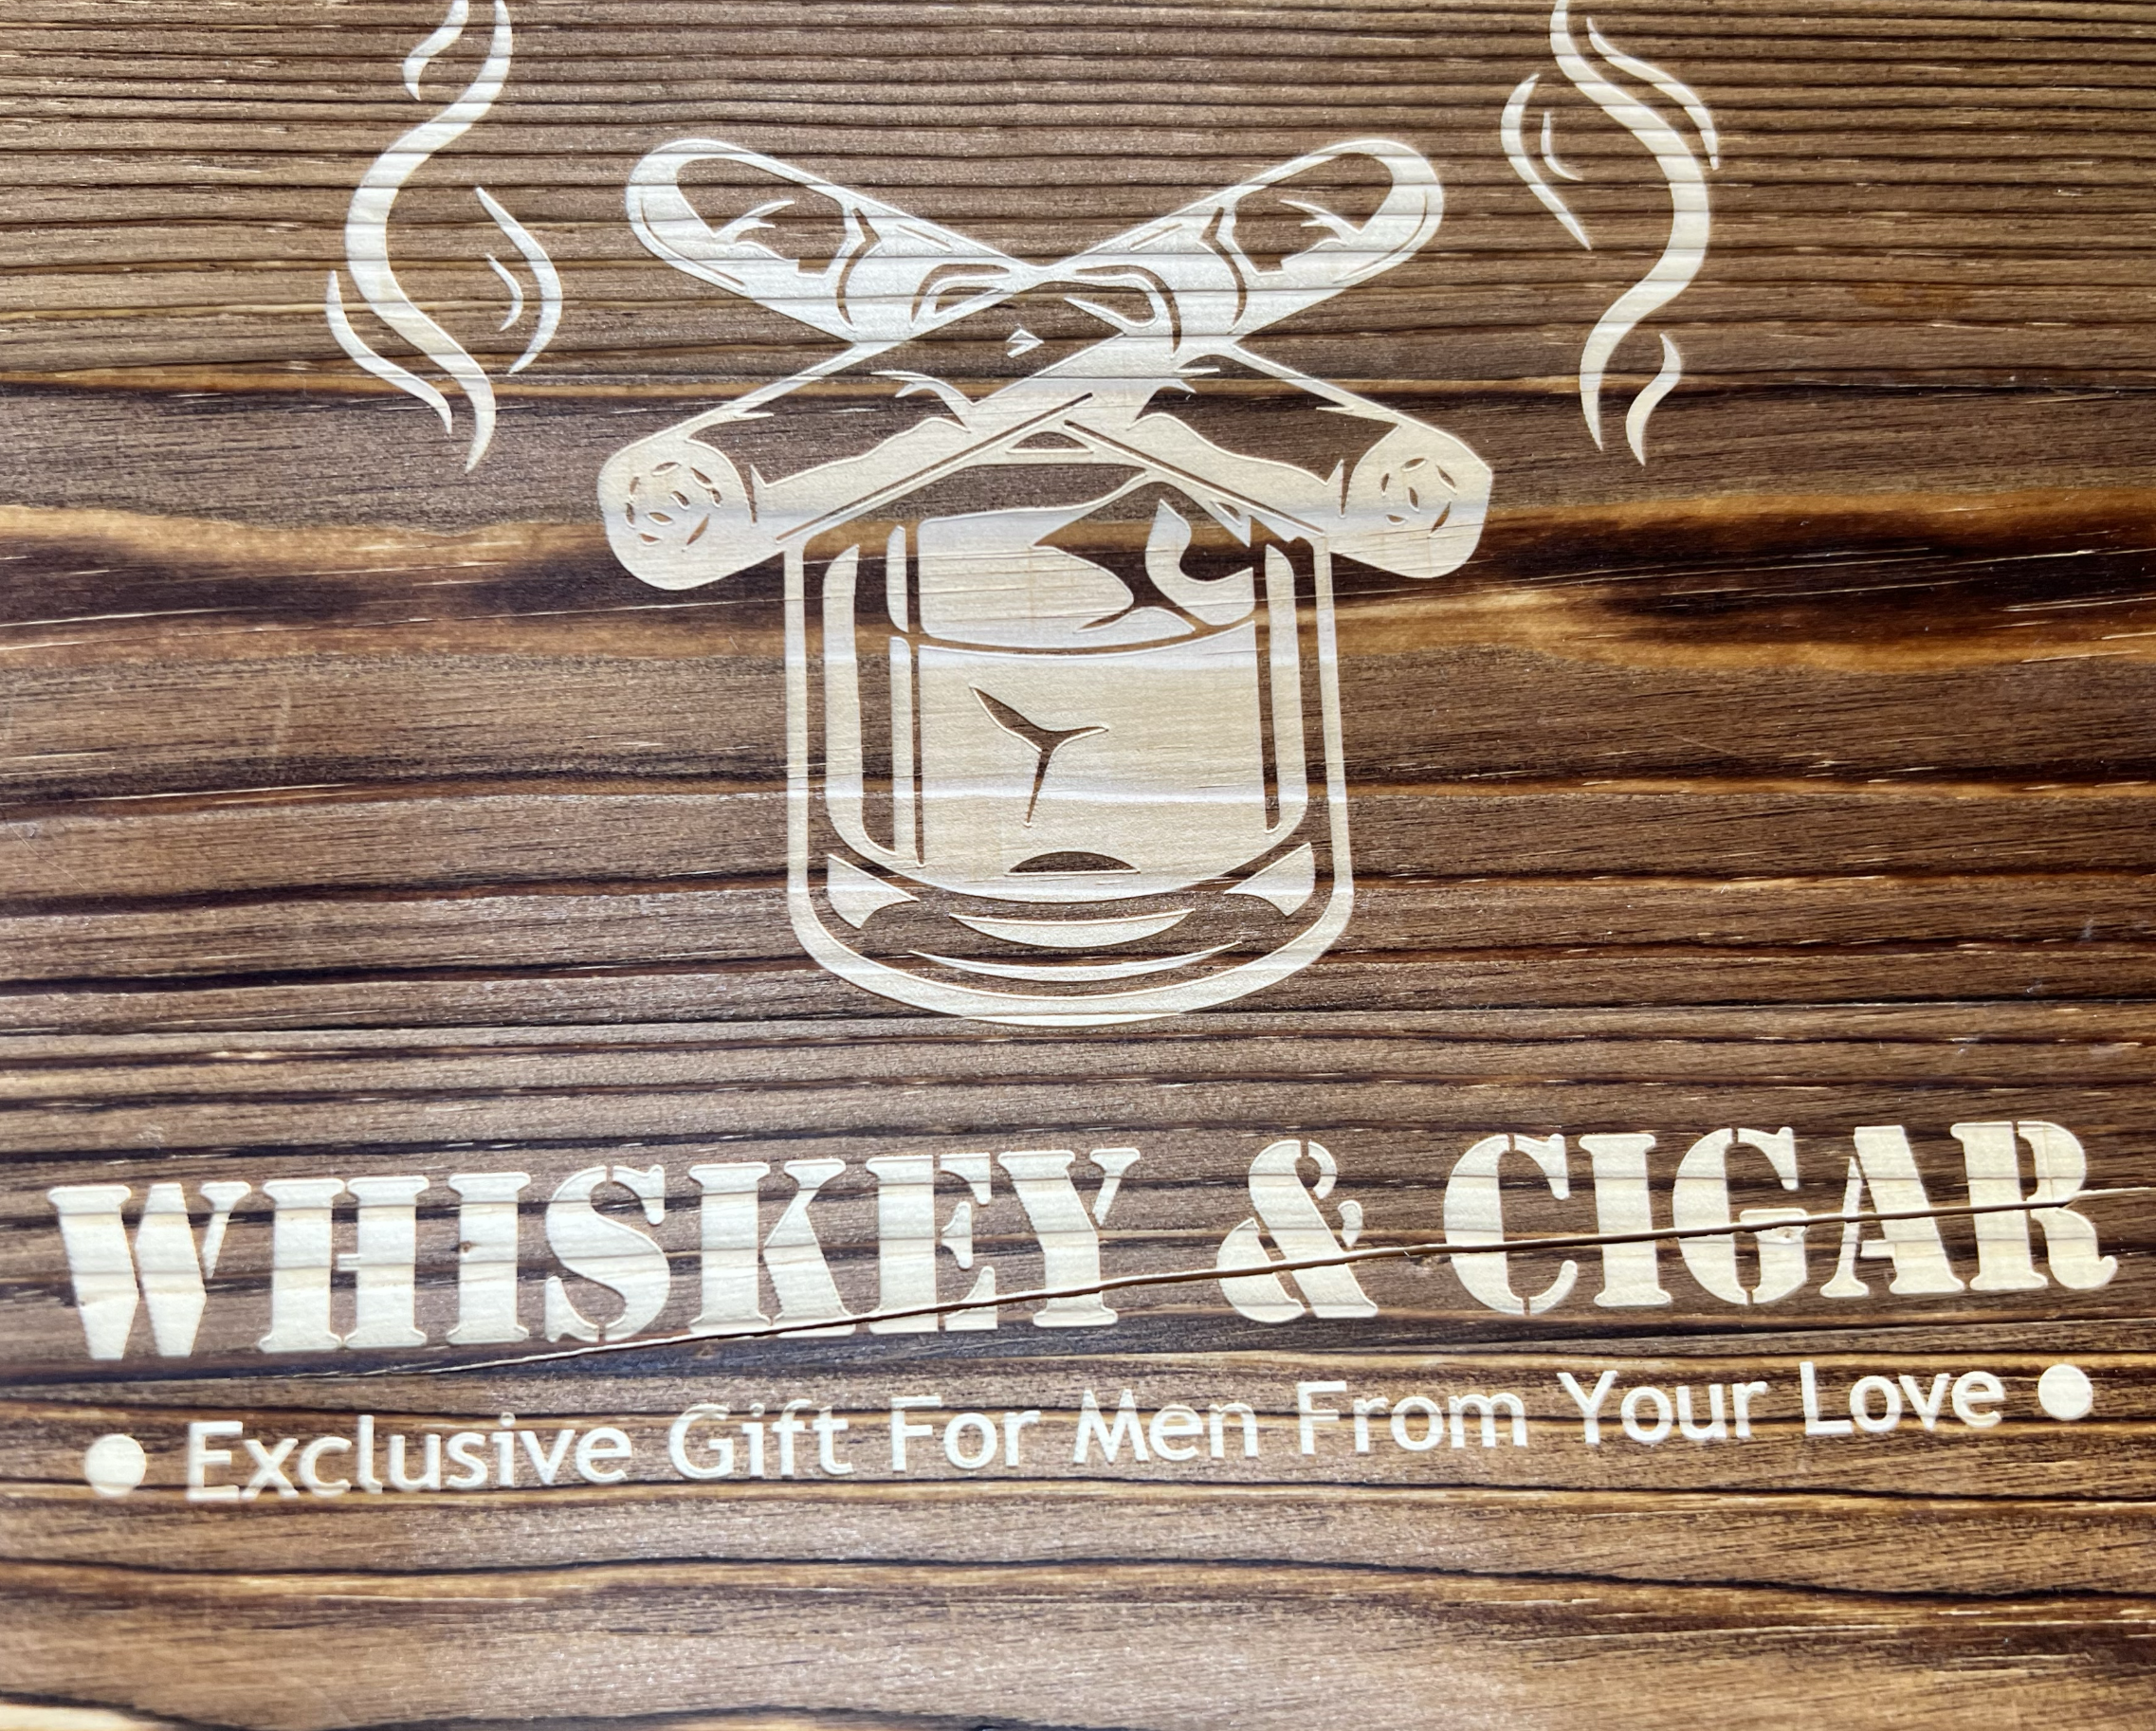 Whiskey and Cigar Box Set (Large/Small)